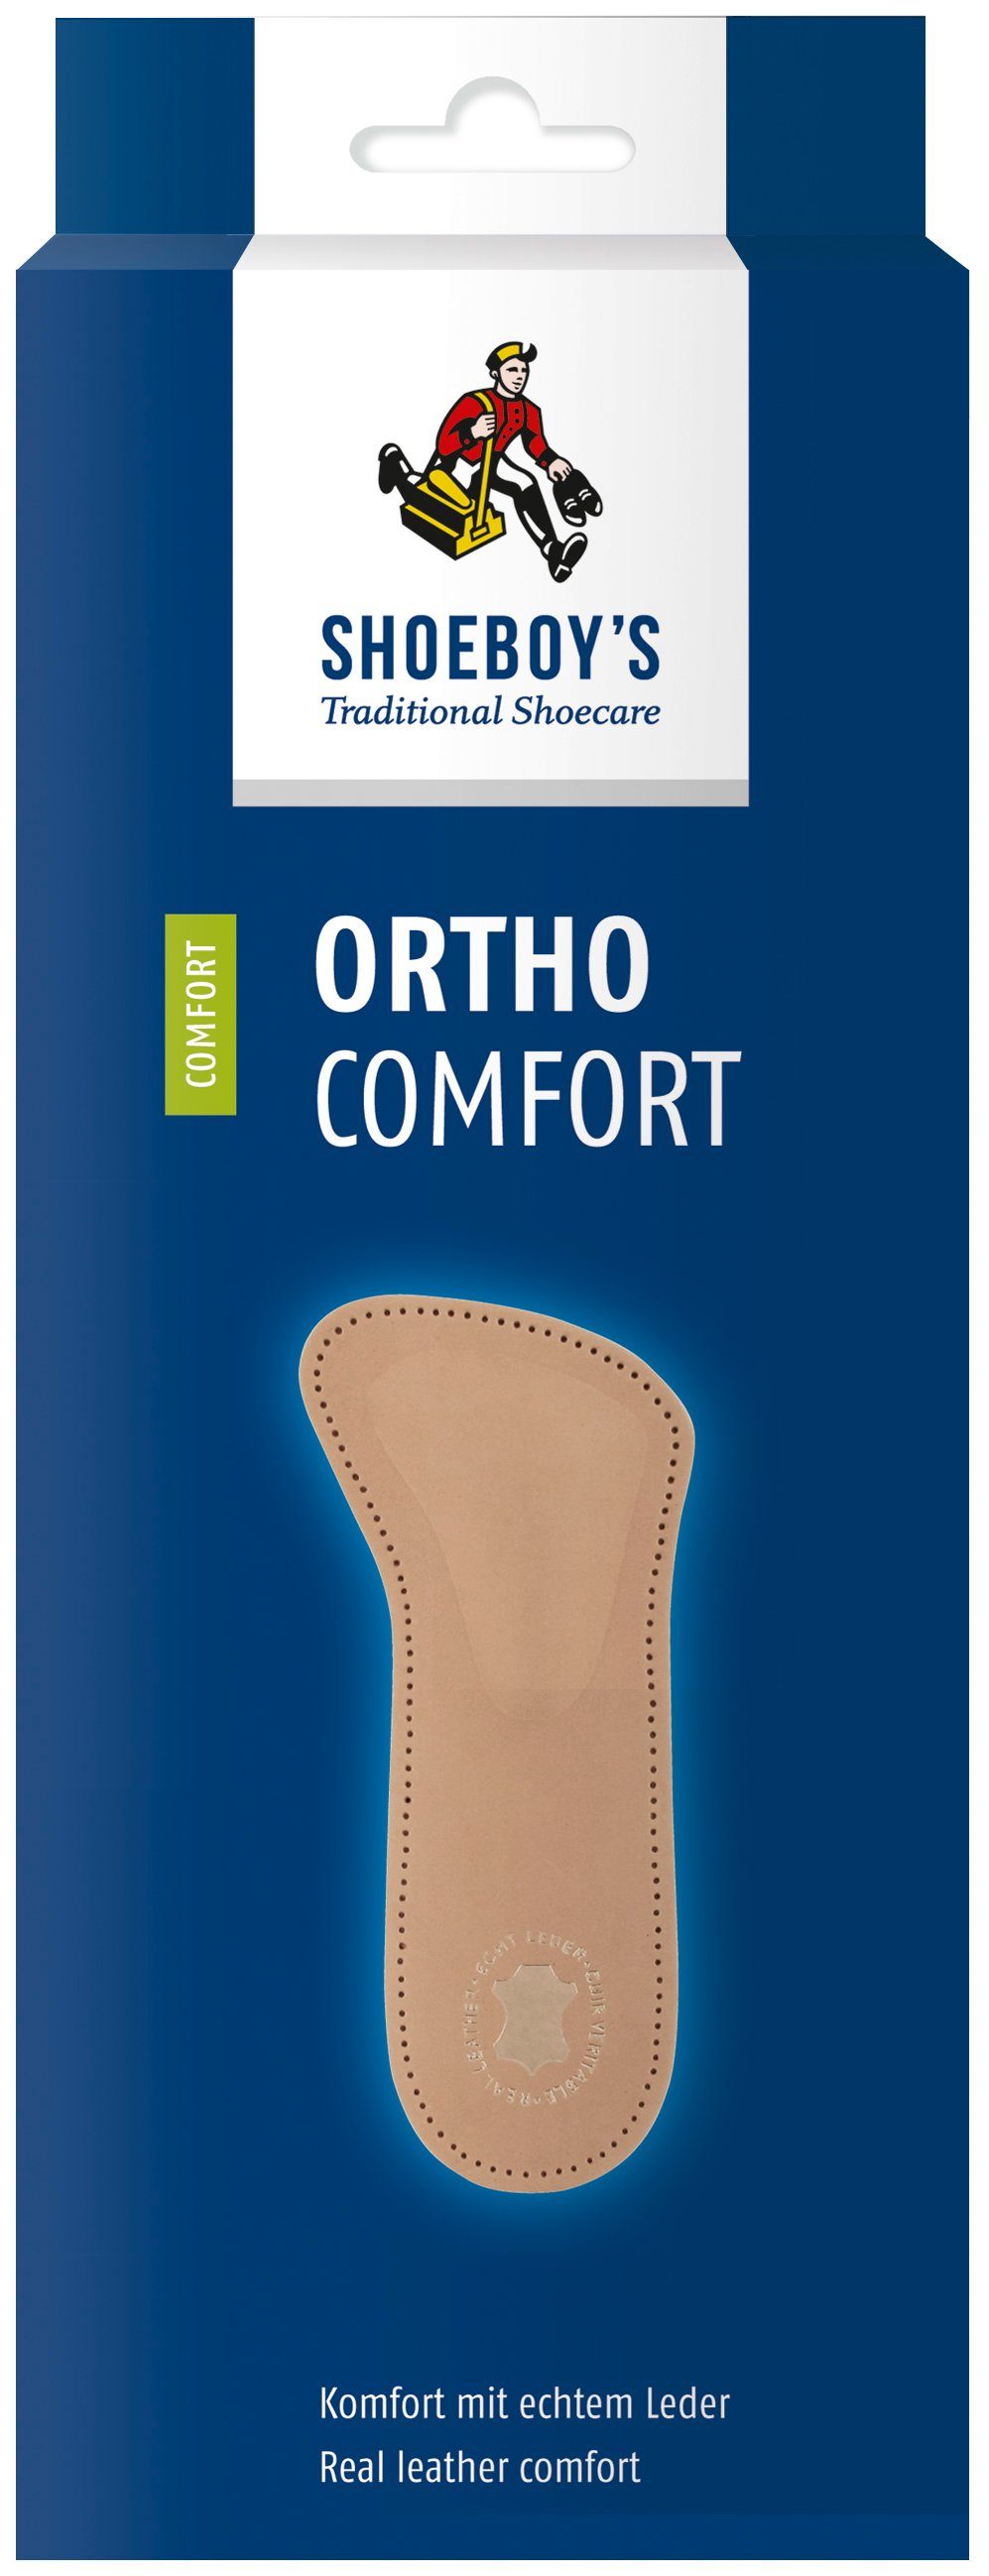 Shoeboys Spreizfußpolster Ortho Comfort - die optimale Fußstütze bei Spreizfußproblemen und Ballenbrennen